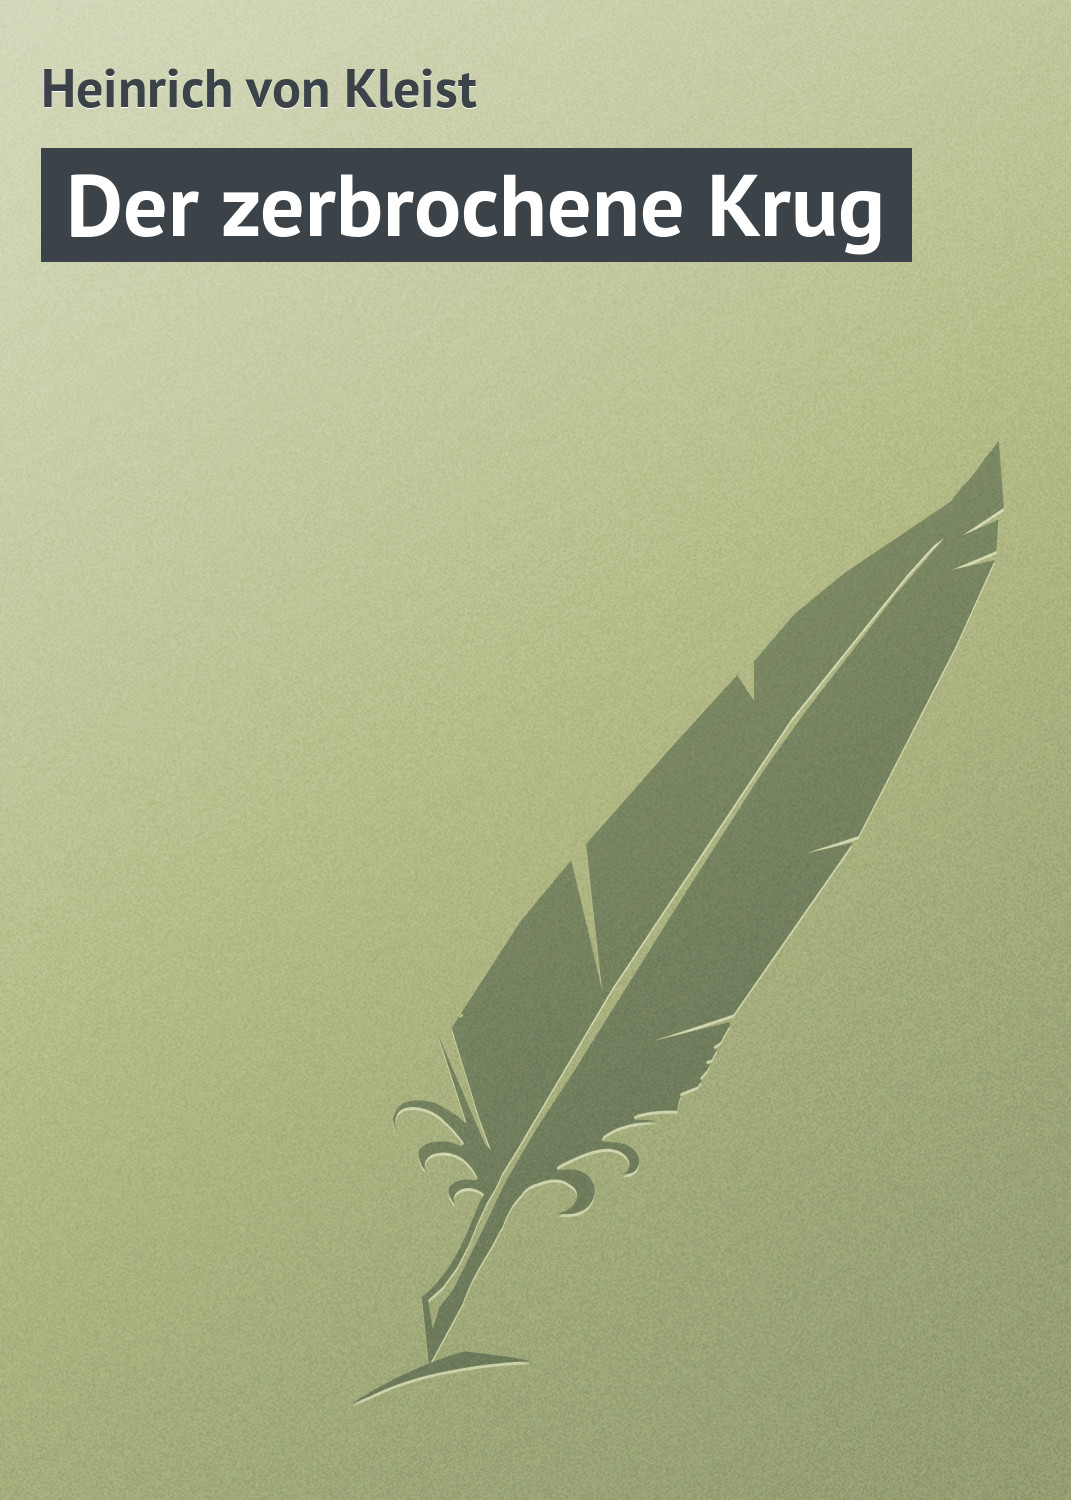 Книга Der zerbrochene Krug из серии , созданная Heinrich von, может относится к жанру Зарубежная старинная литература, Зарубежная классика. Стоимость электронной книги Der zerbrochene Krug с идентификатором 21104798 составляет 5.99 руб.